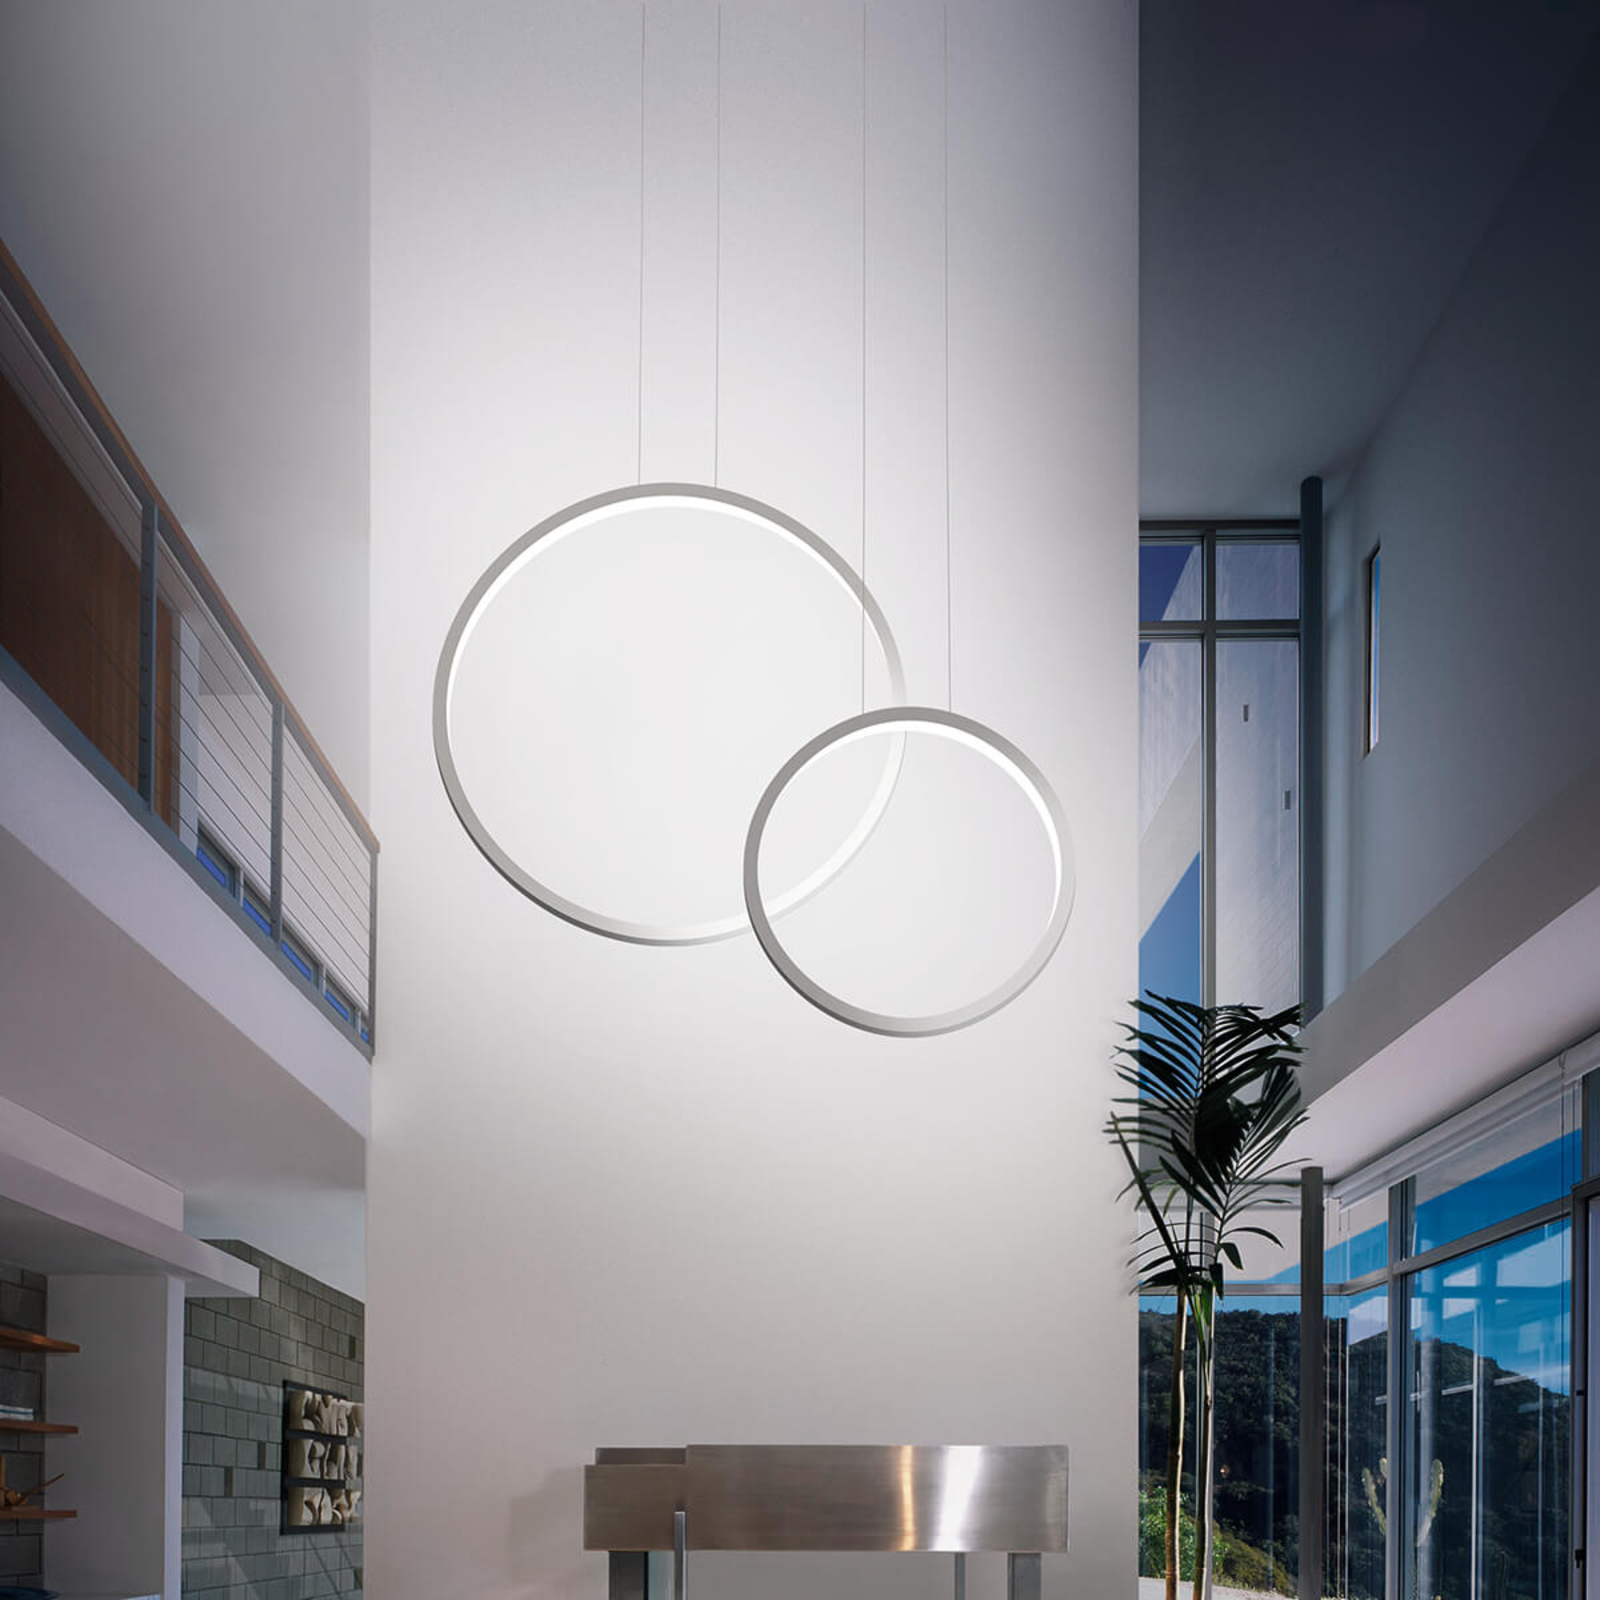 Cini&Nils Assolo - bílé závěsné světlo LED, 43 cm